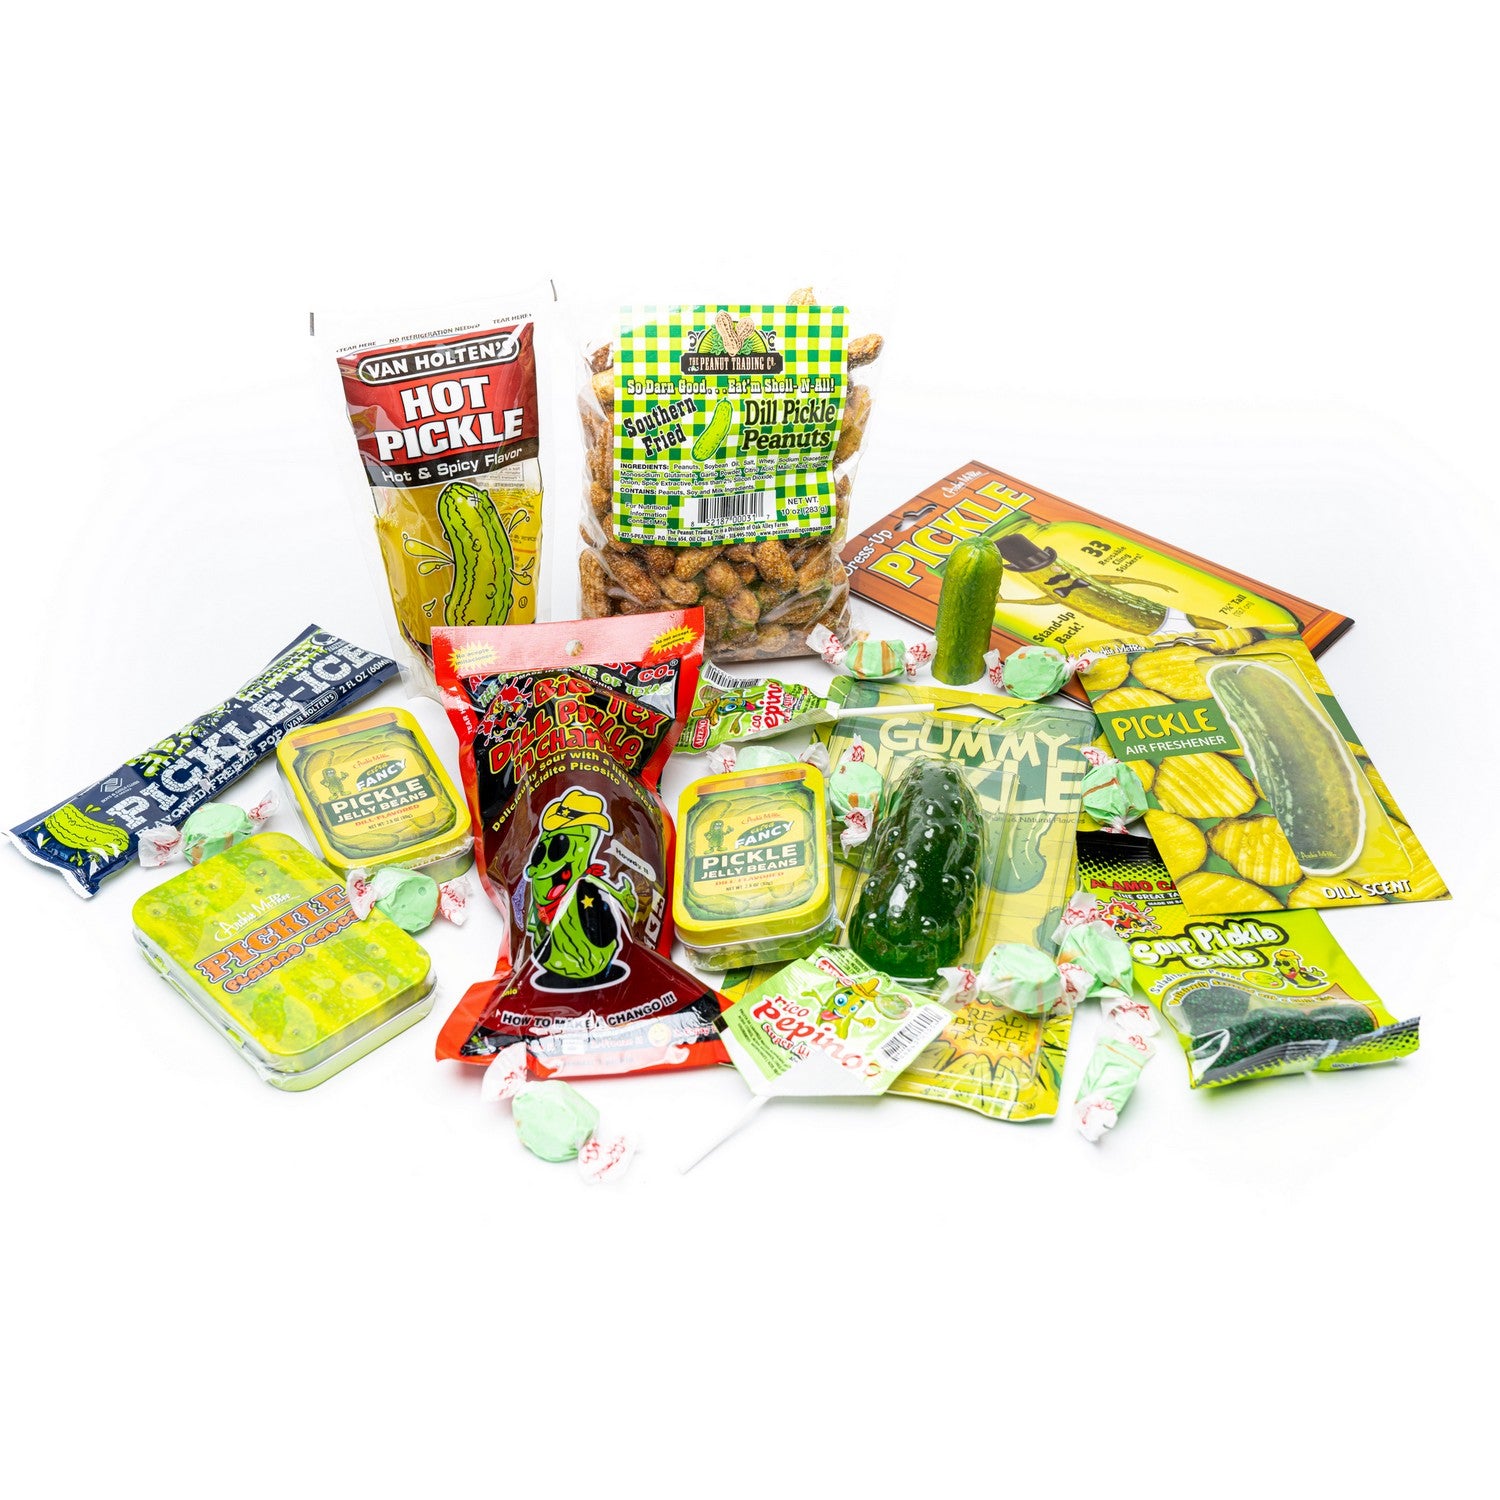 Pickle Sampler Gift Box - FREE SHIP IN US